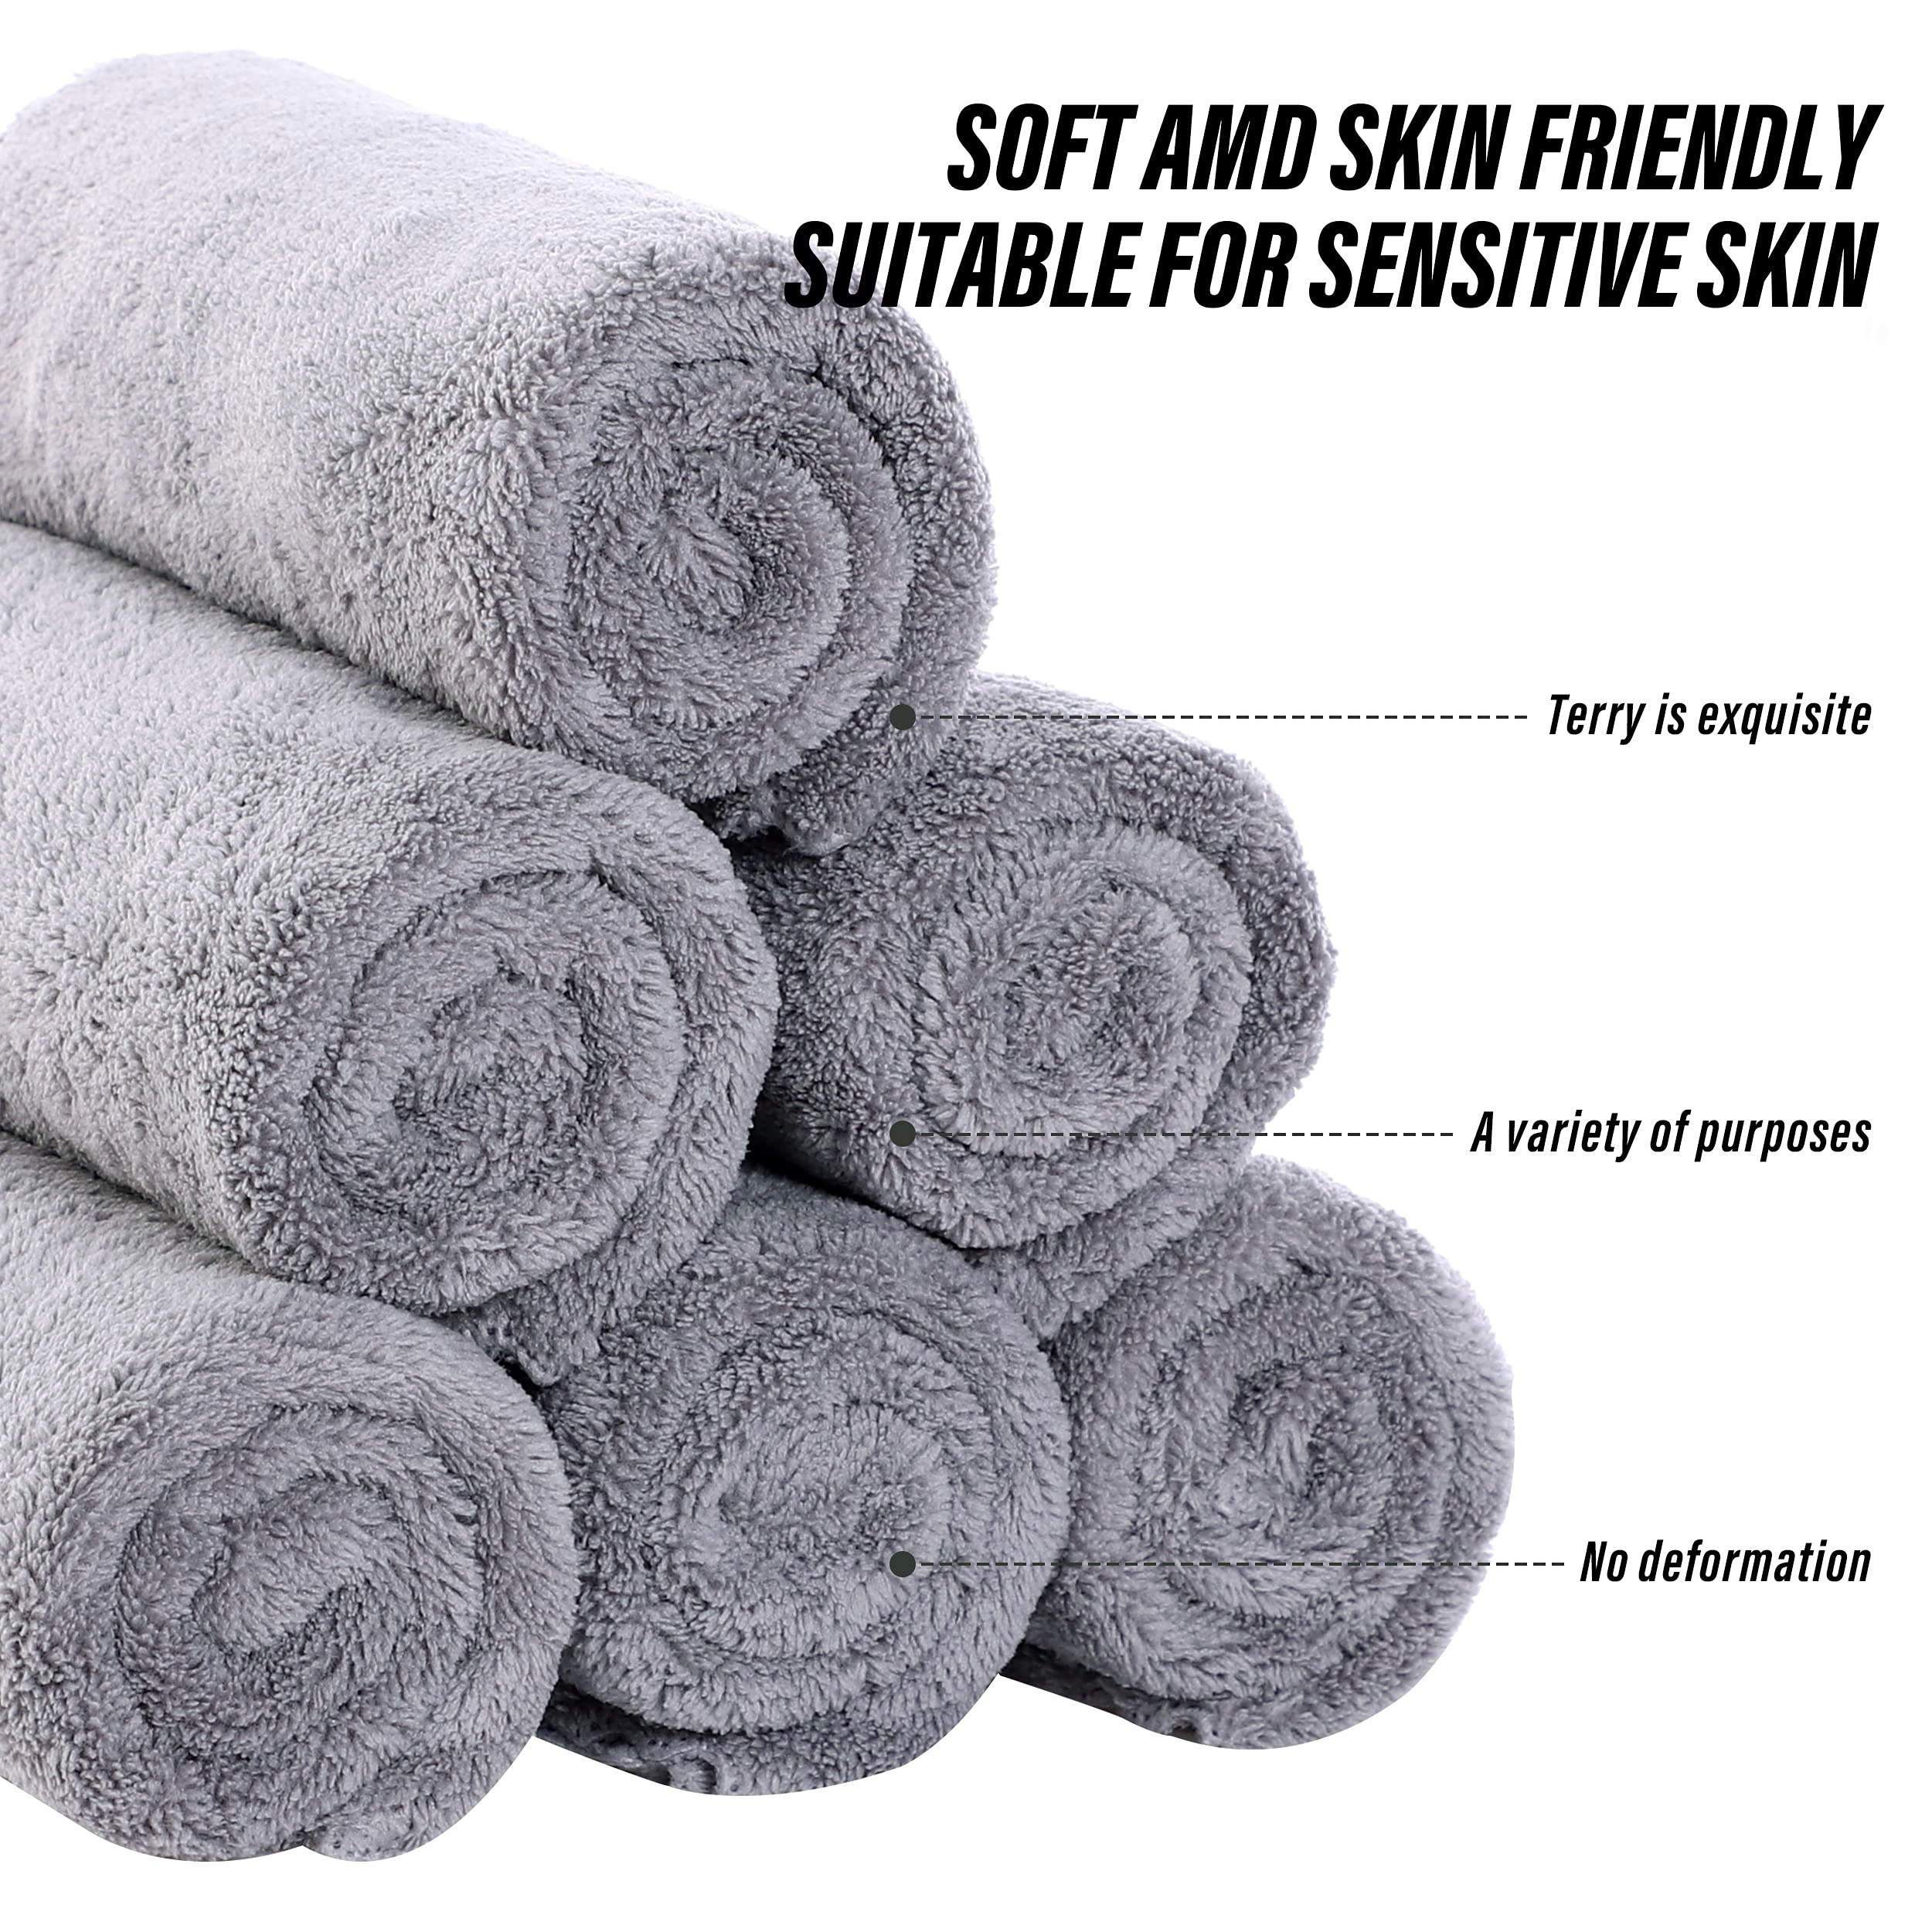 Coral Velvet Black White Towel Bathroom Towel Set Soft Absorbent